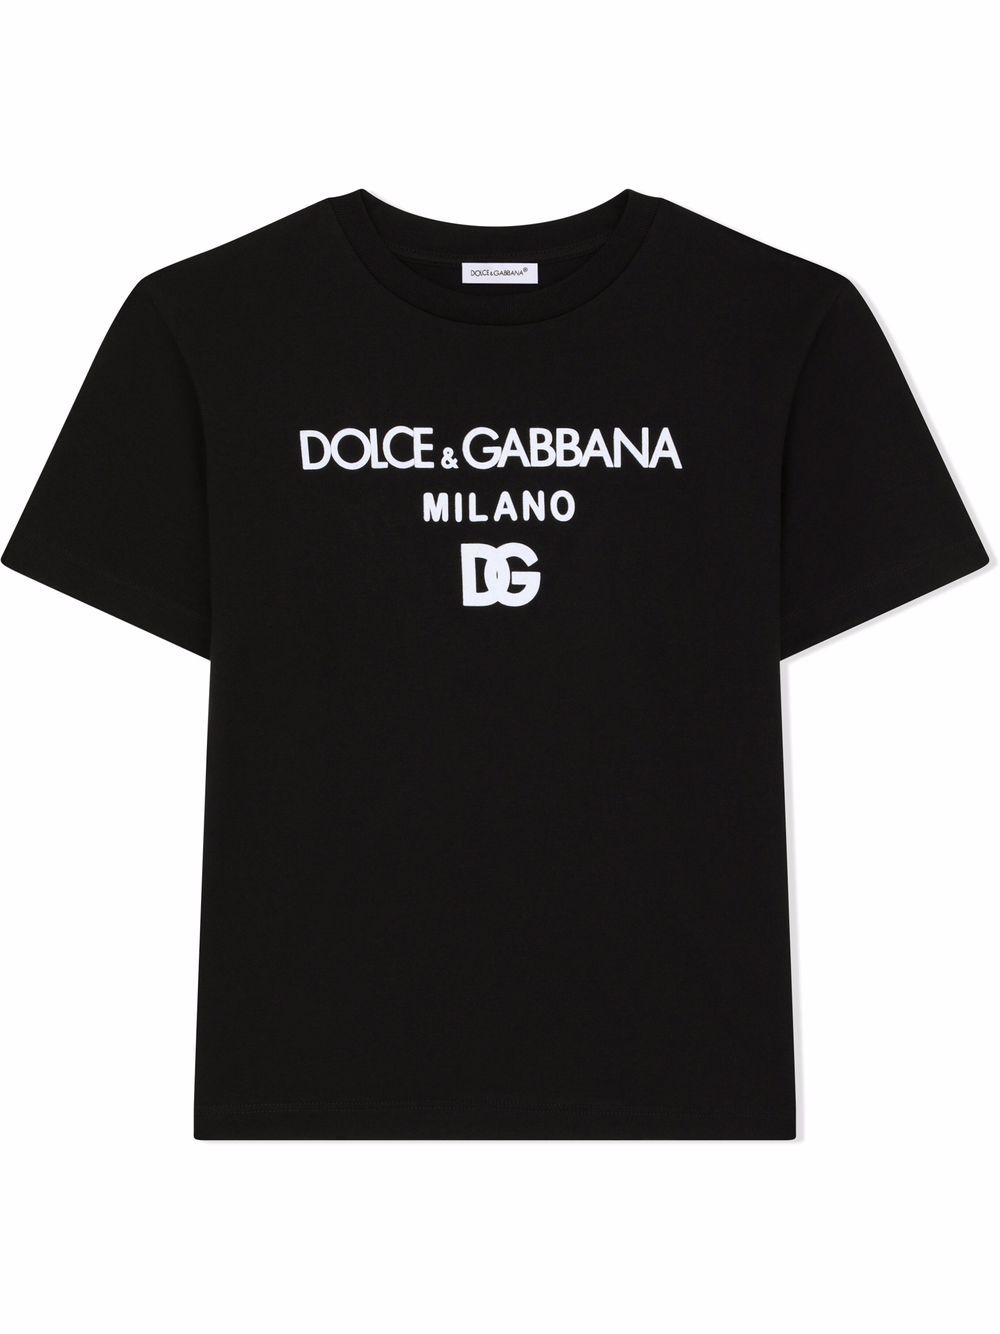 фото Dolce & gabbana kids футболка с логотипом